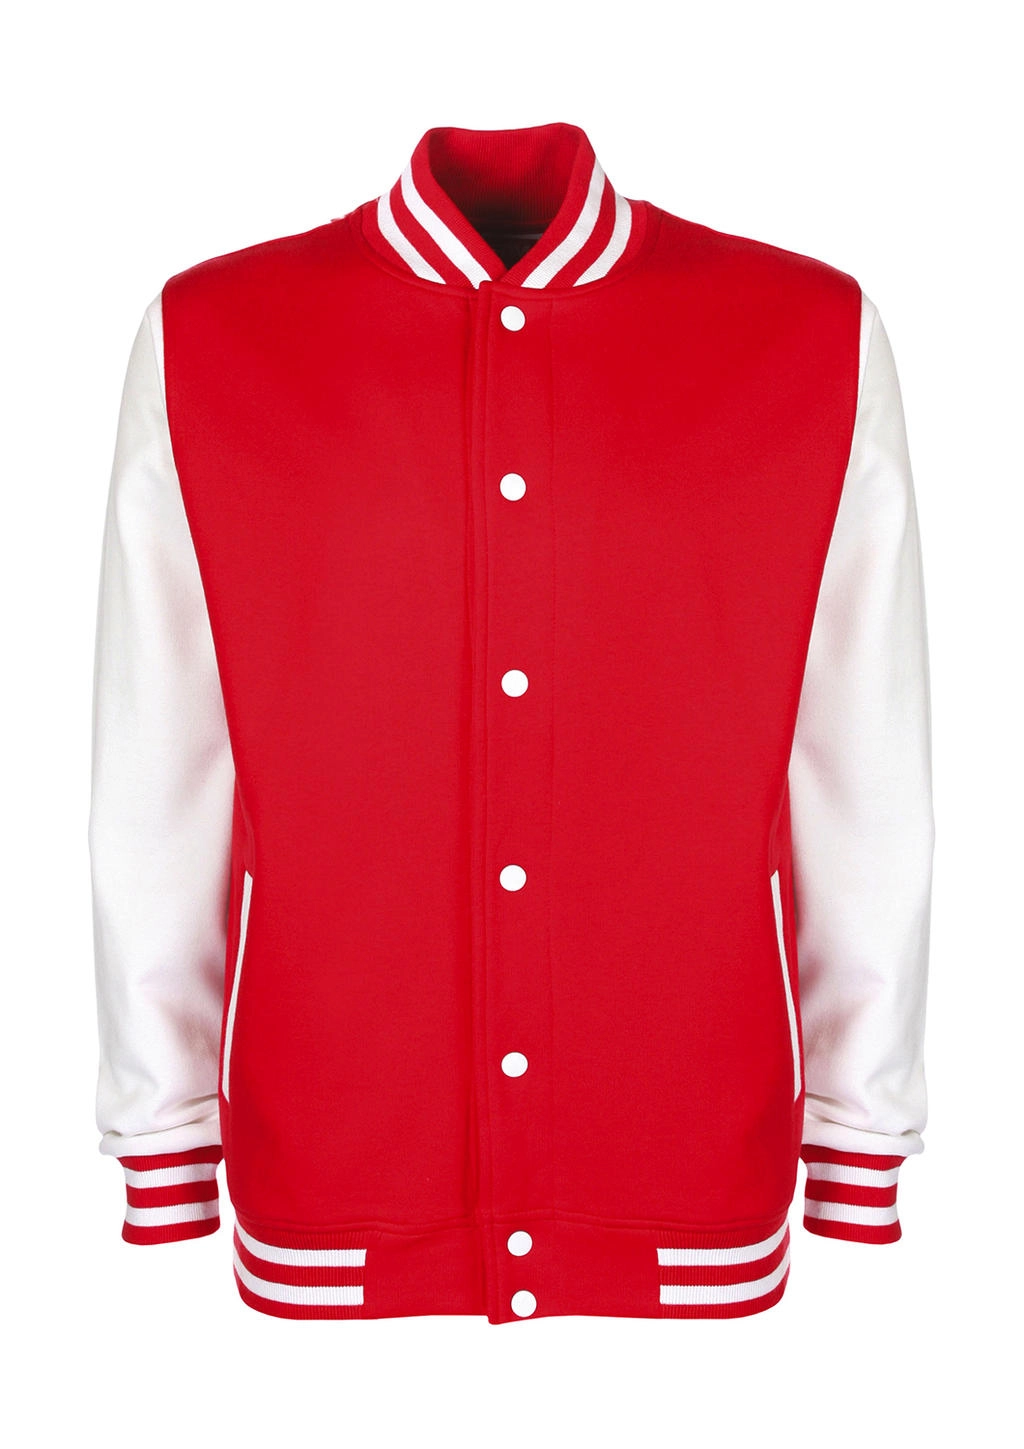 Varsity Jacket zum Besticken und Bedrucken in der Farbe Fire Red/White mit Ihren Logo, Schriftzug oder Motiv.